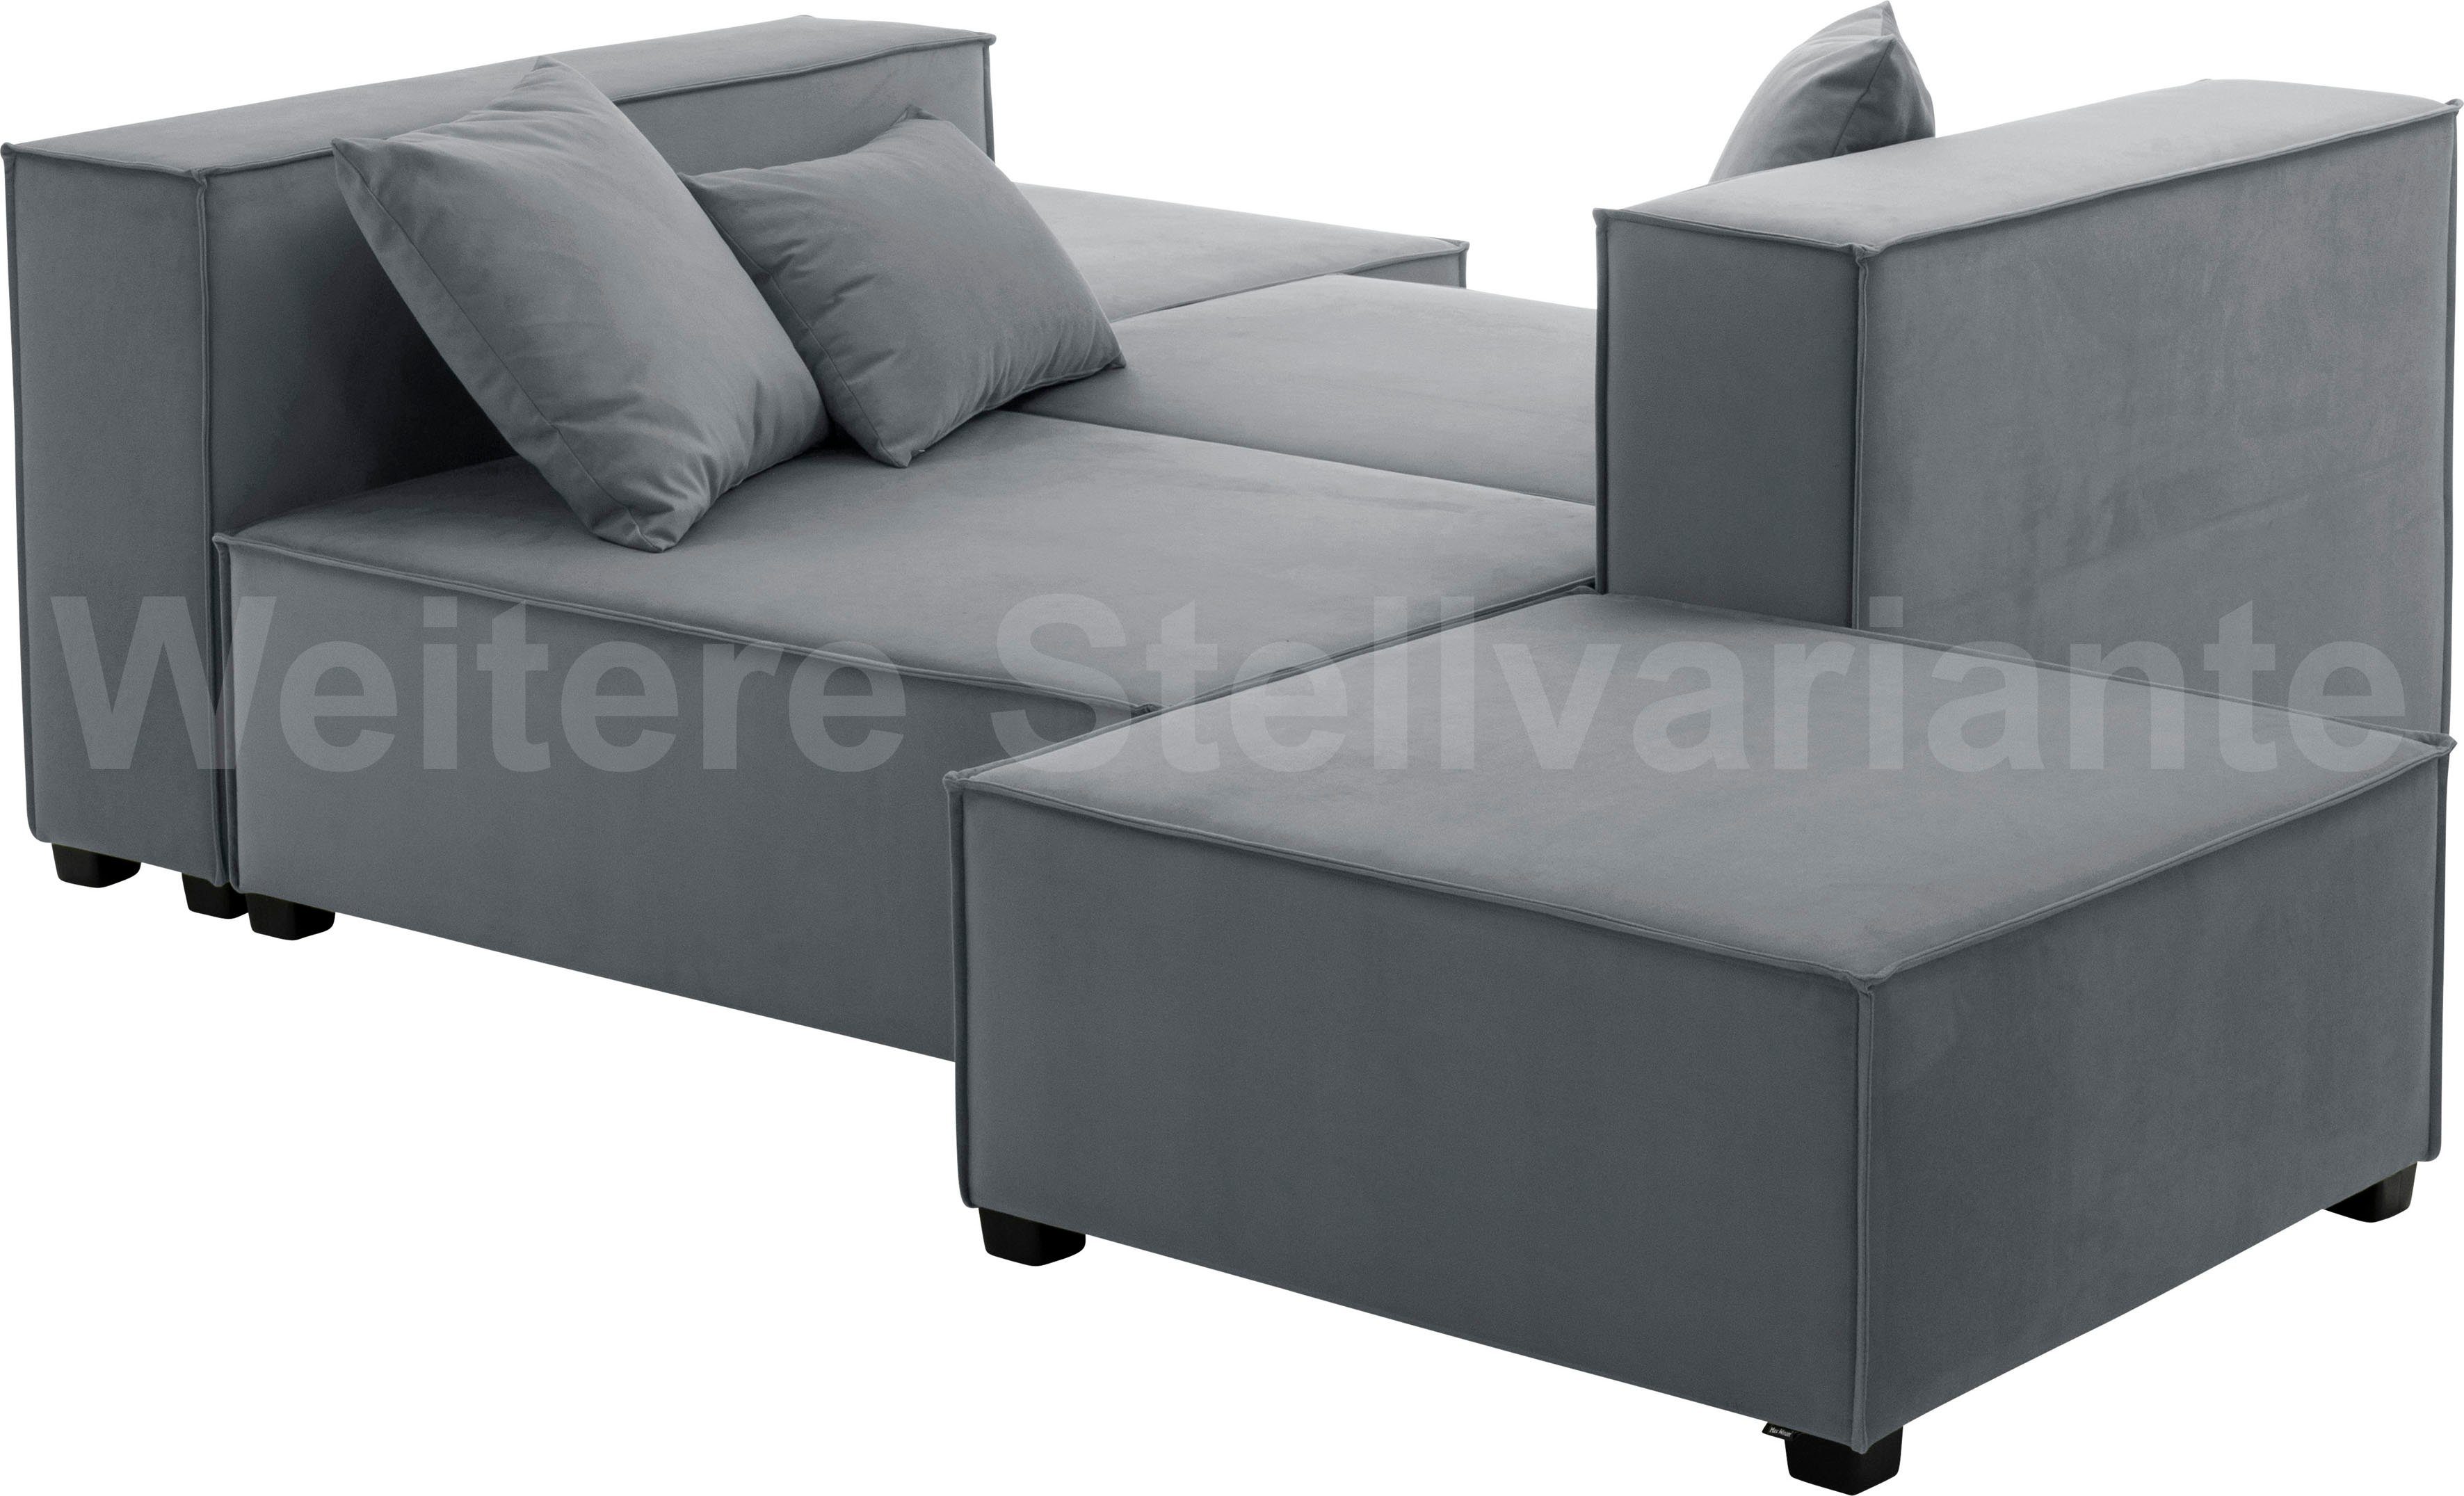 Max Winzer® Wohnlandschaft MOVE, Set, Sofa-Set 09 aus 6 Sitz-Elementen, inklusive 3 Zierkissen grau